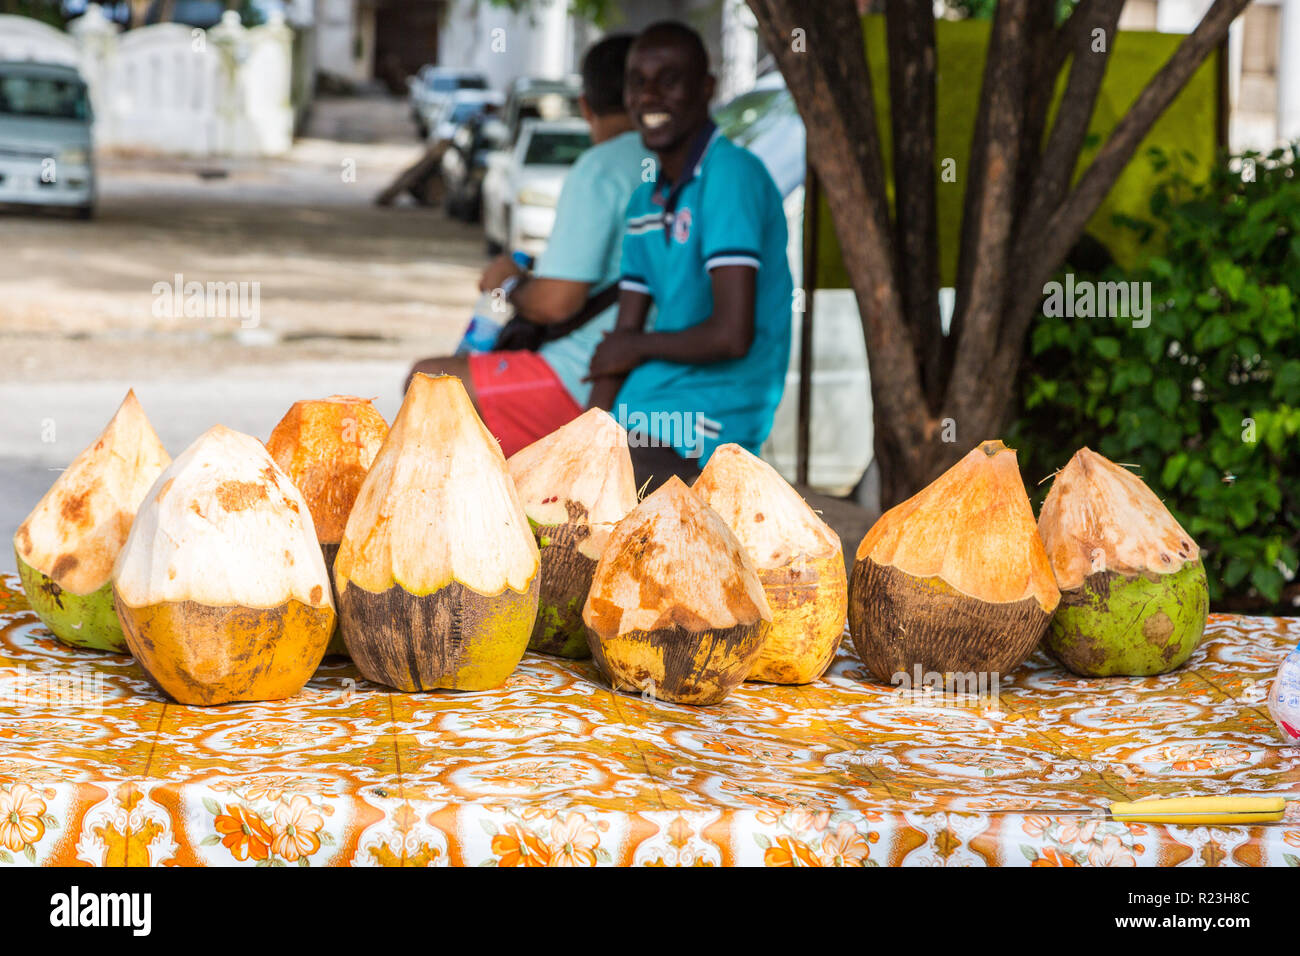 Vendeur de rue de cocotiers. Stone Town, le vieux centre colonial de la ville de Zanzibar, l'île de Unguja, Tanzanie Banque D'Images